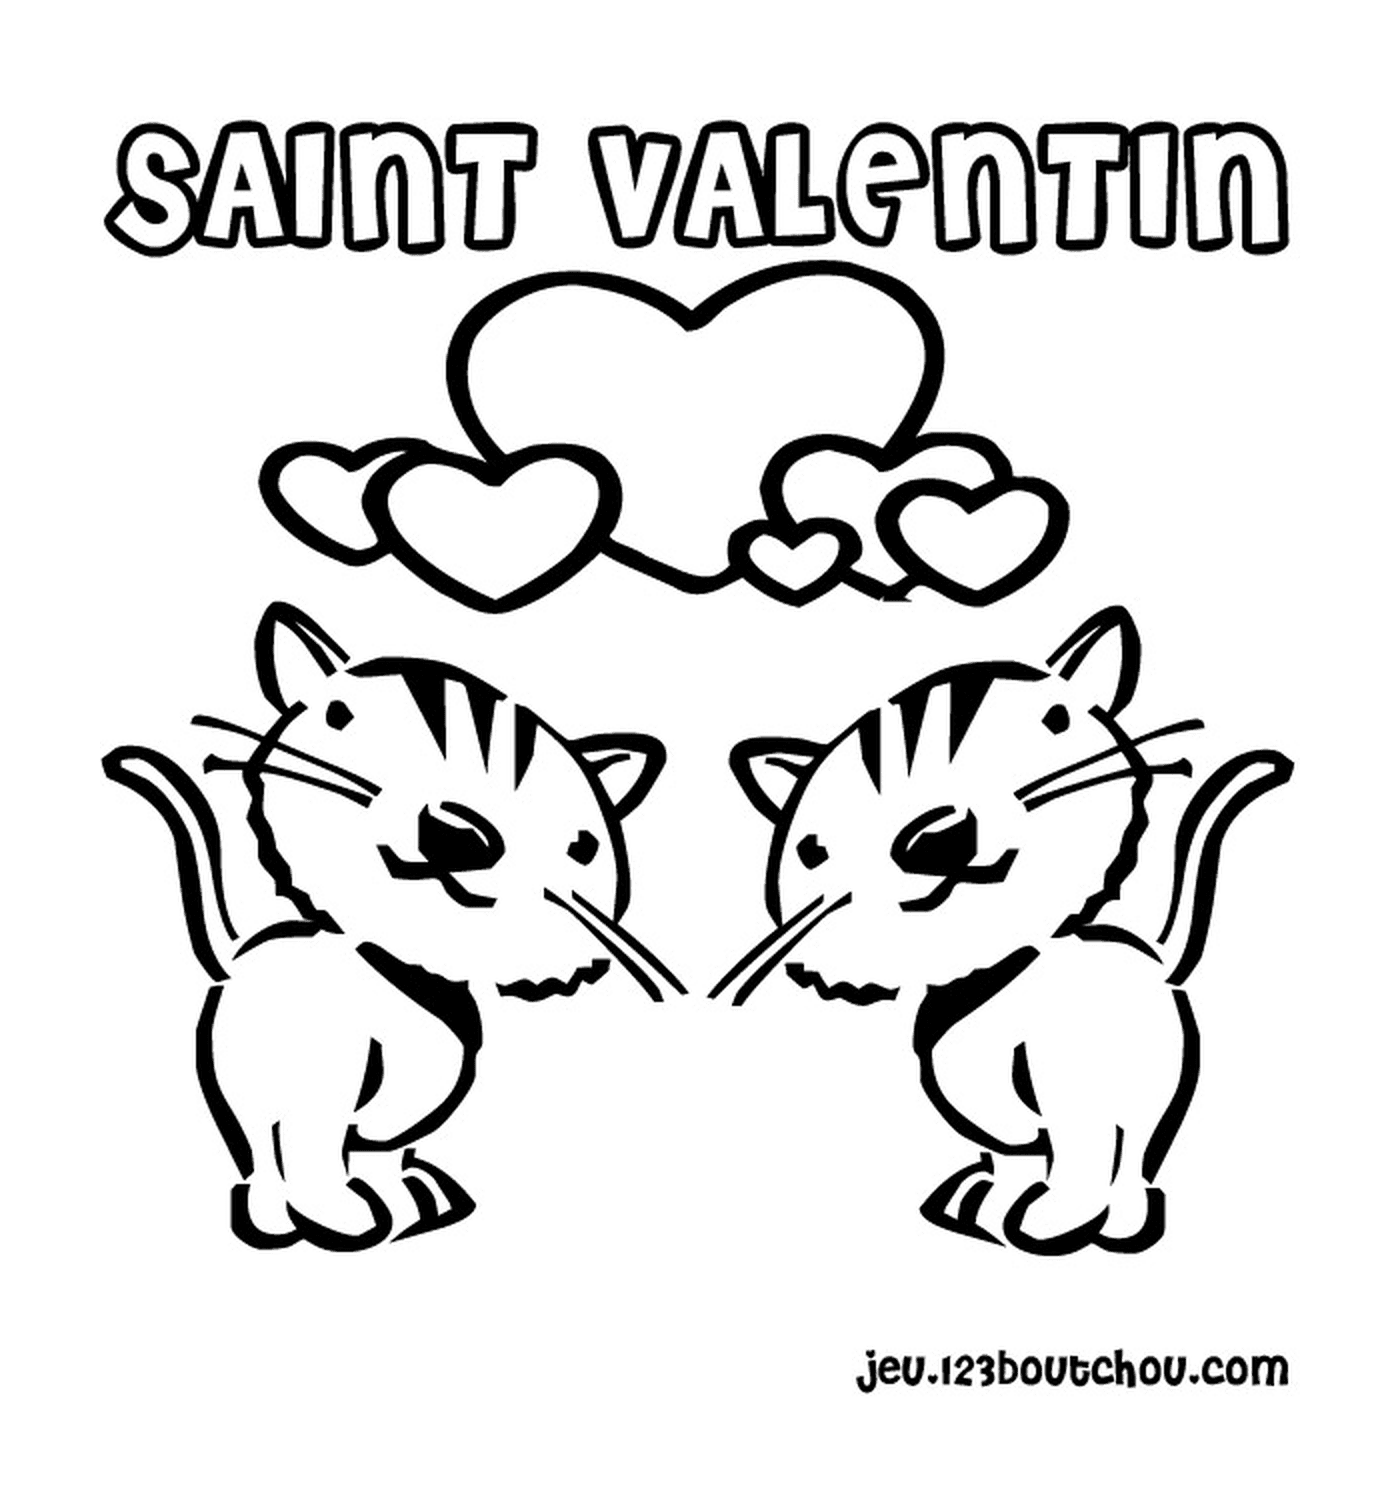   Saint-Valentin, chats amoureux 